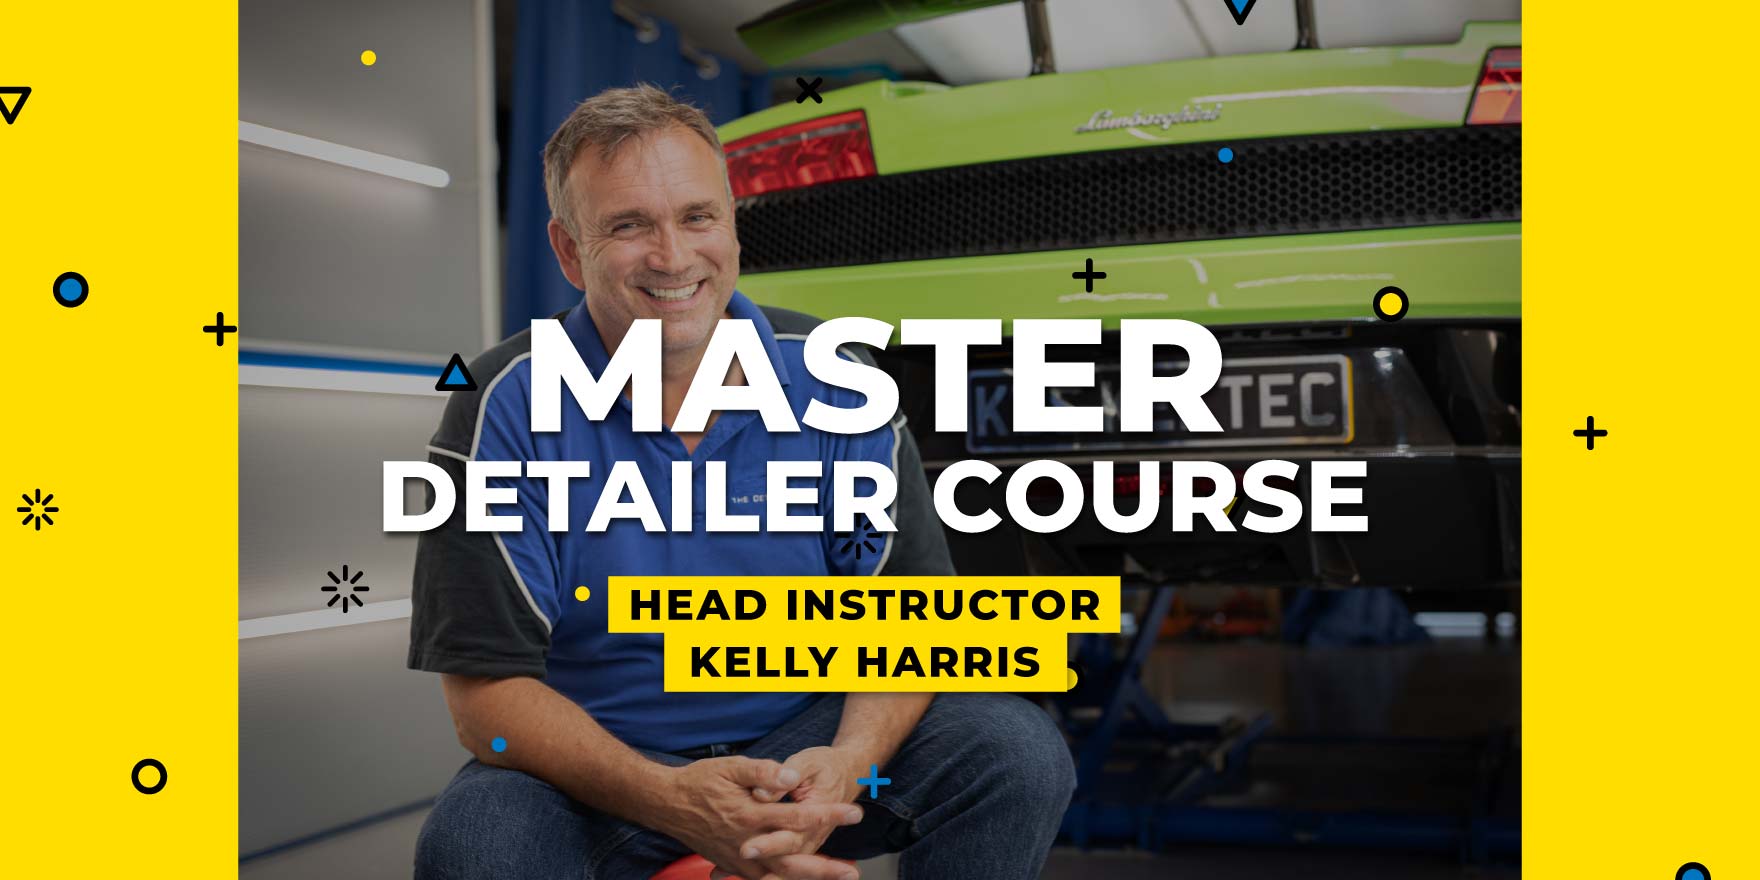 Master Detailer Course